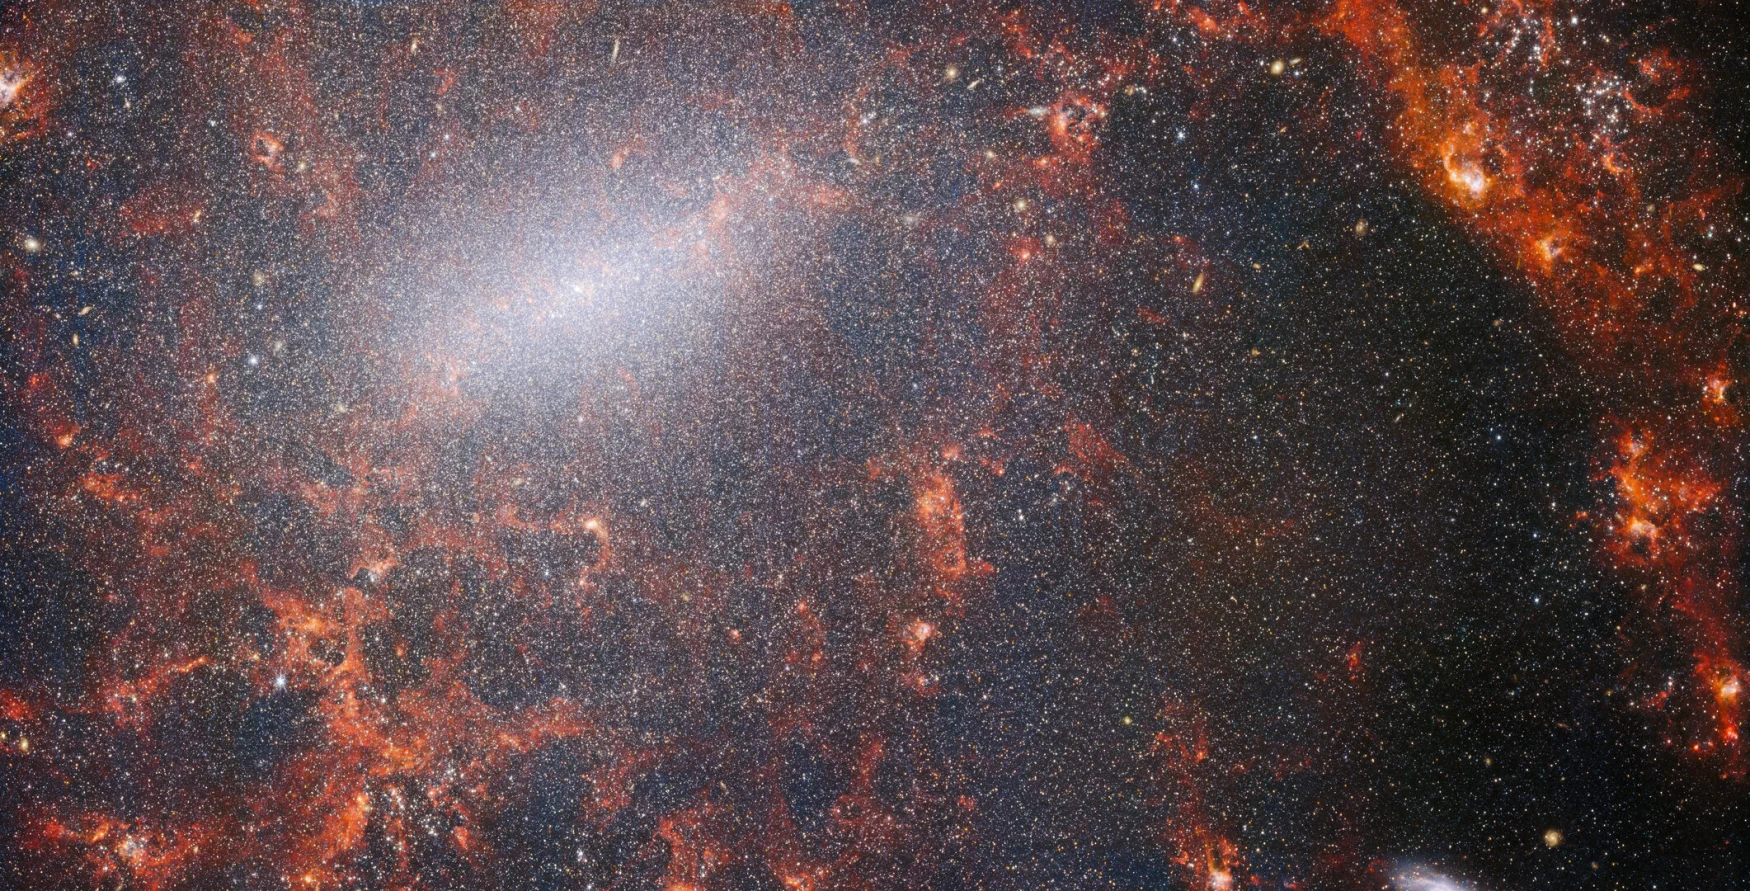 Filamentos finos de polvo y cúmulos de estrellas brillantes se ven en esta imagen del Telescopio Espacial James Webb de NASA/ESA/CSA.  Esta vista del instrumento NIRCam de Webb está salpicada del cúmulo masivo de estrellas de la galaxia, la más densamente agrupada a lo largo de su barra central brillante, junto con nubes rojas de gas encendidas iluminadas por las estrellas jóvenes en su interior.  Estas estrellas centelleantes pertenecen a la galaxia espiral de barrera NGC 5068, que se encuentra a unos 17 millones de años luz de la Tierra en la constelación de Virgo.  Esta imagen de NGC 5068 es parte de una campaña para crear un tesoro de astronomía, un depósito para las observaciones de formación estelar en galaxias cercanas.  Las gemas anteriores de esta colección se pueden ver aquí y aquí.  Estas observaciones son particularmente valiosas para los astrónomos por dos razones.  La primera es que la formación estelar sustenta muchas áreas de la astronomía, desde la física de los débiles plasmas interestelares hasta la evolución de galaxias enteras.  Al observar la formación de estrellas en las galaxias cercanas, los astrónomos esperan iniciar un gran avance científico con algunos de los primeros datos disponibles de Webb.  La segunda razón es que las observaciones de Webb se basan en otros estudios que utilizan telescopios, incluido el Telescopio Espacial Hubble de NASA/ESA y algunos de los observatorios terrestres más capaces del mundo.  Webb recolectó imágenes de 19 galaxias formadoras de estrellas cercanas, que los astrónomos pudieron luego combinar con los catálogos del Hubble de 10 000 cúmulos estelares, mapeó espectralmente 20 000 nebulosas de emisión estelar del Very Large Telescope (VLT), y observó 12 000 de nebulosas oscuras.  , densas nubes moleculares identificadas por el Atacama Large Millimeter/Submillimeter Array (ALMA).  Estas observaciones abarcan el espectro electromagnético y brindan a los astrónomos una oportunidad sin precedentes para reconstruir los detalles de la formación estelar.  Esta imagen en el infrarrojo cercano de la galaxia está llena del cúmulo masivo de estrellas antiguas que forman el núcleo de NGC 5068. La vista nítida de NIRCam permite a los astrónomos mirar a través del gas y el polvo de la galaxia para examinar sus estrellas más de cerca.  A lo largo del camino de los brazos espirales hay densas y brillantes nubes de polvo: estas son regiones H II, cúmulos de gas de hidrógeno donde se están formando nuevas estrellas.  Las estrellas activas y energéticas ionizan el hidrógeno que las rodea, lo que, combinado con la emisión de polvo caliente, produce este brillo rojizo.  Las regiones H II son un gran objetivo para los astrónomos, y los instrumentos de Webb son las herramientas perfectas para examinarlas, lo que da como resultado esta imagen. [Image Description: A close-in image of a spiral galaxy, showing its core and part of a spiral arm. At this distance thousands upon thousands of tiny stars that make up the galaxy can be seen. The stars are most dense in a whitish bar that forms the core, and less dense out from that towards the arm. Bright red gas clouds follow the twist of the galaxy and the spiral arm.] Enlaces NGC 5068 (NIRCam + Imagen MIRI) 